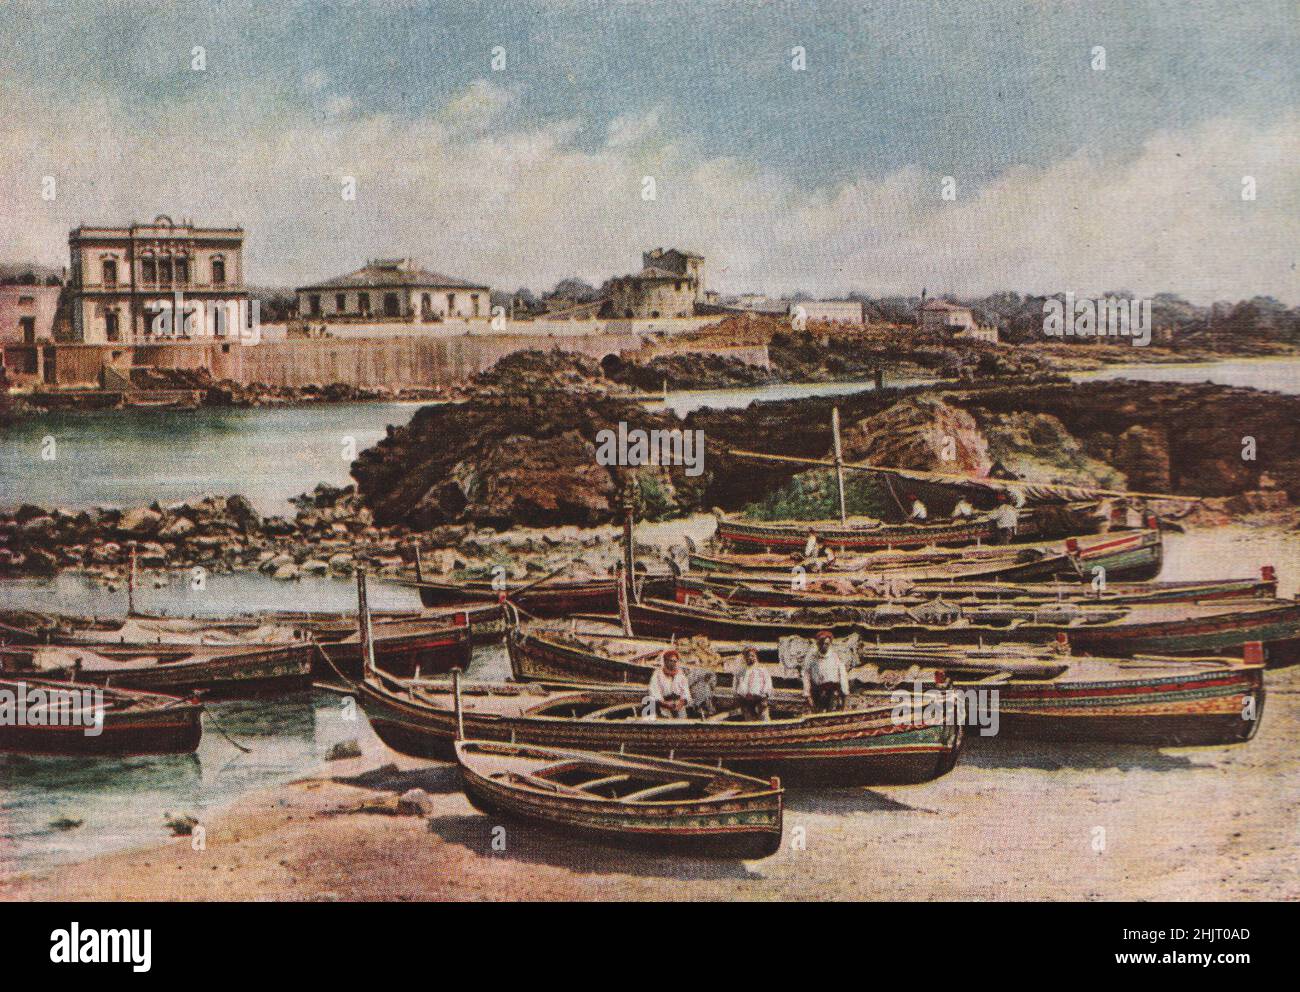 Strani disegni in colori fantastici sono stati dipinti sulle gunwales di queste barche disegnate sulla spiaggia di Aci Castello. Italia. Sicilia (1923) Foto Stock